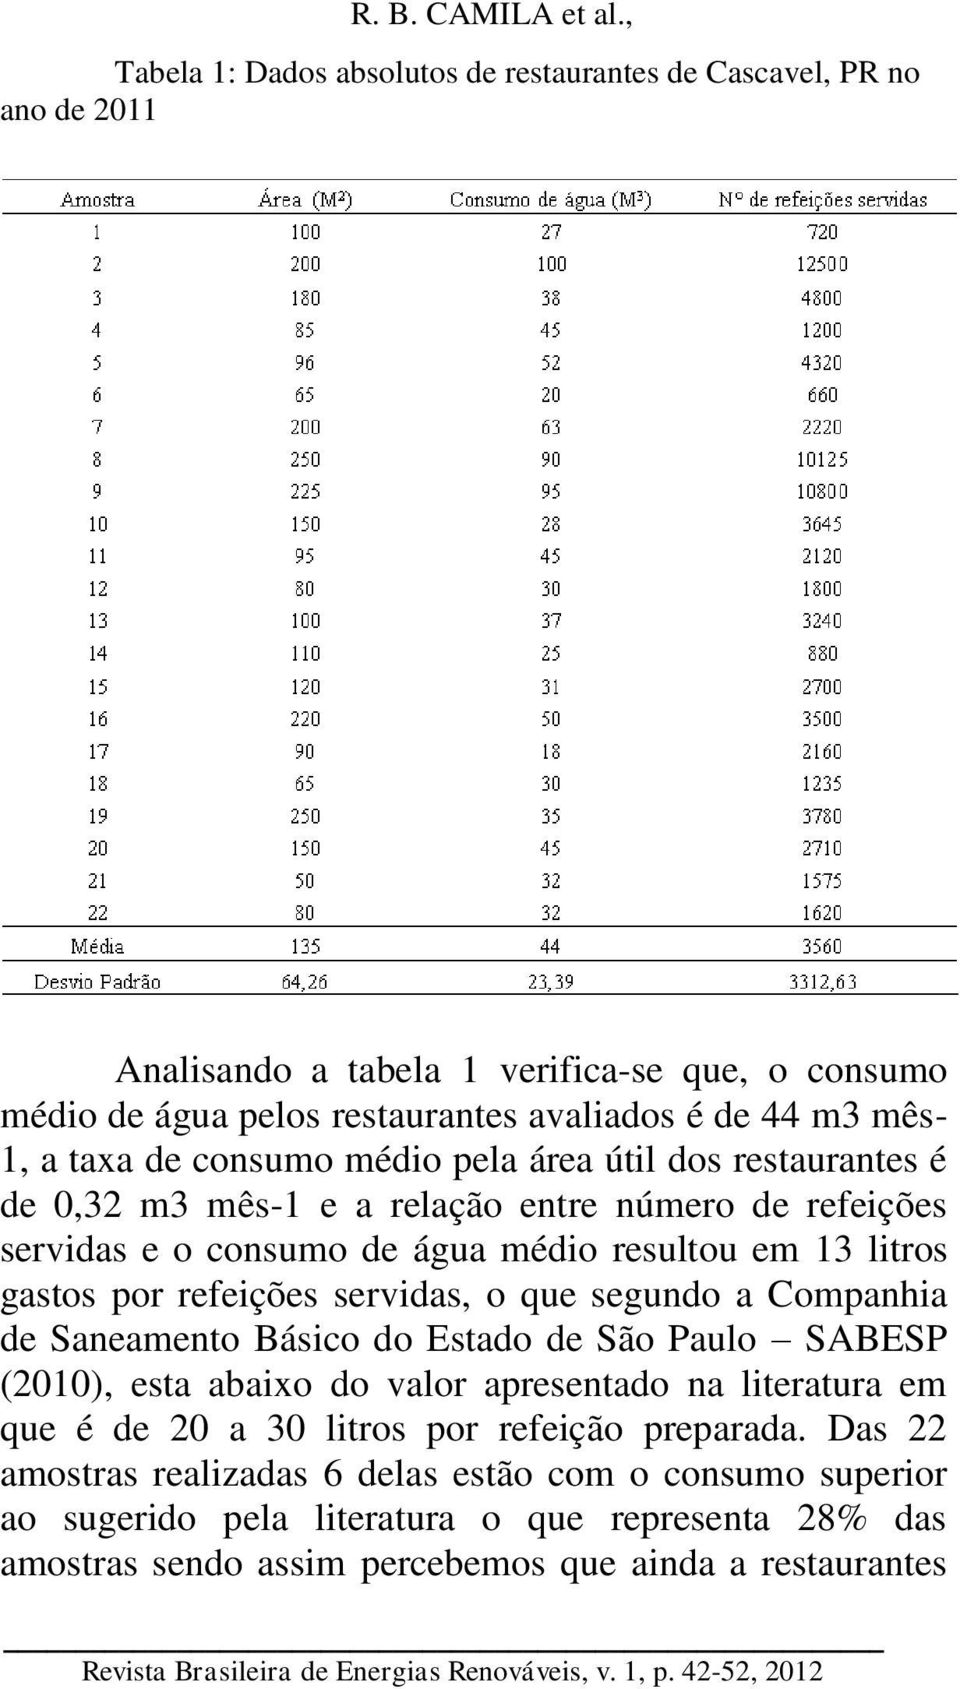 refeições servidas, o que segundo a Companhia de Saneamento Básico do Estado de São Paulo SABESP (2010), esta abaixo do valor apresentado na literatura em que é de 20 a 30 litros por